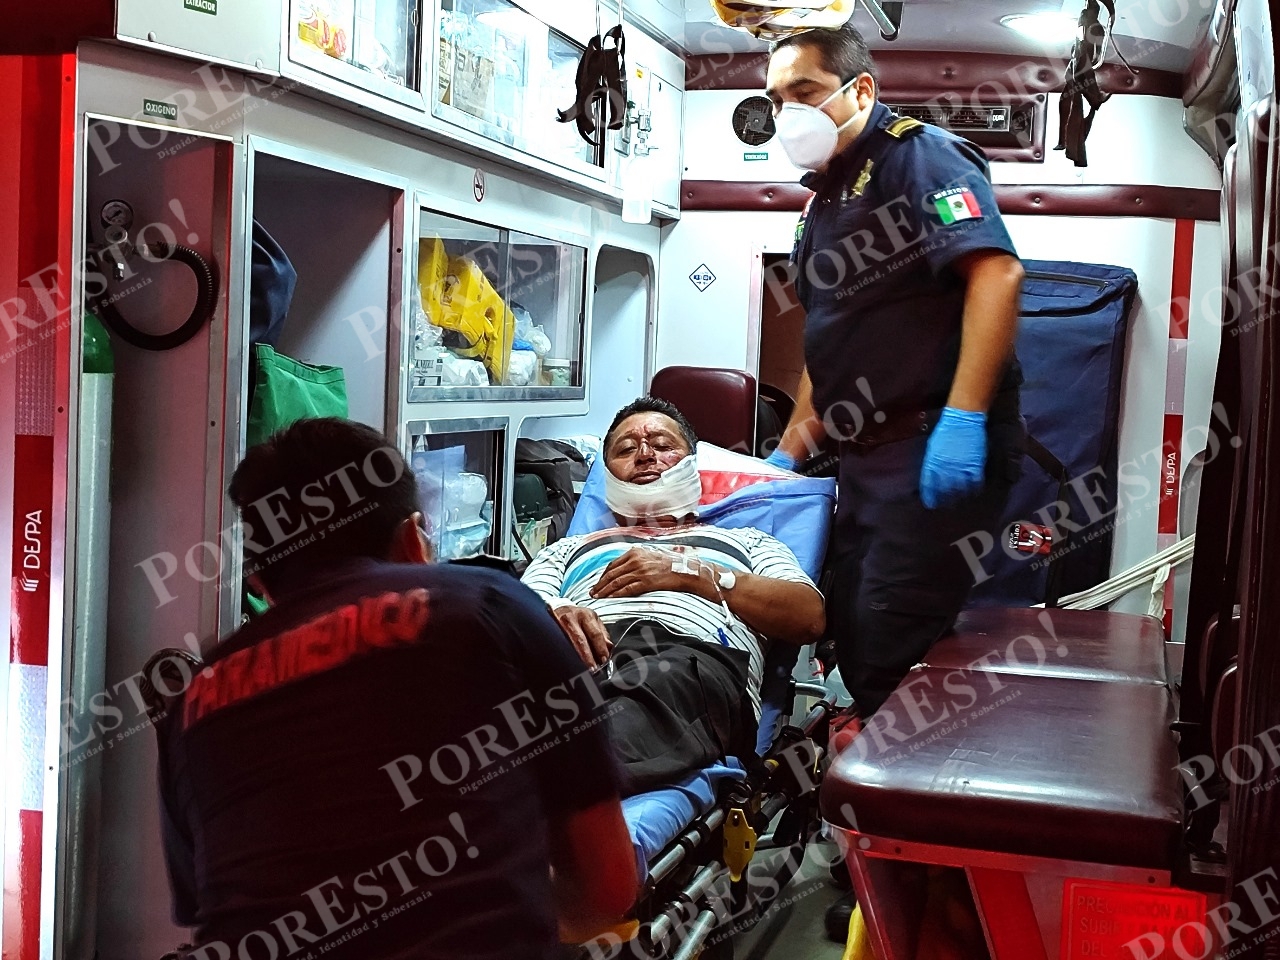 El hombre fue trasladado gravemente herido al hospital San Carlos de Tizimín